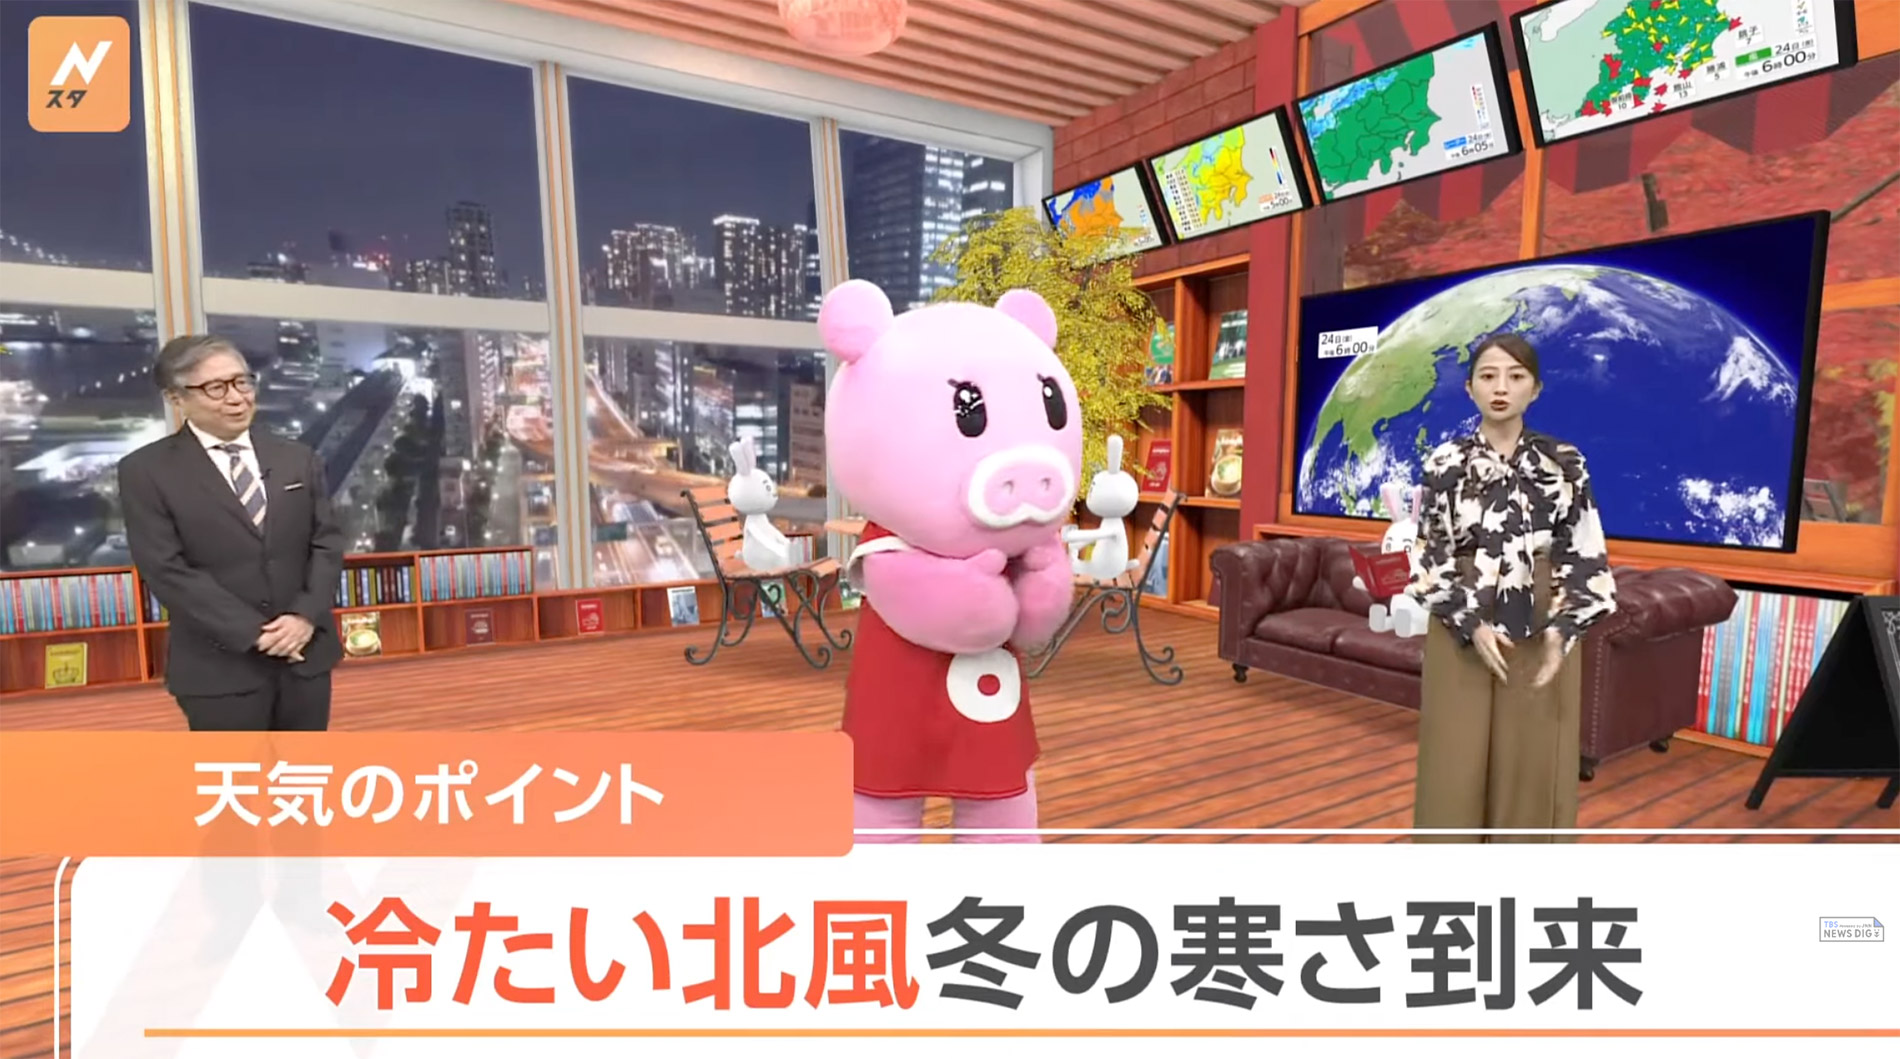 Bei diesem Wetterbericht von TBS News moderiert auch ein Schweinemaskottchen mit. (Quelle: https://www.youtube.com/watch?v=MOAkp-xC3v8)